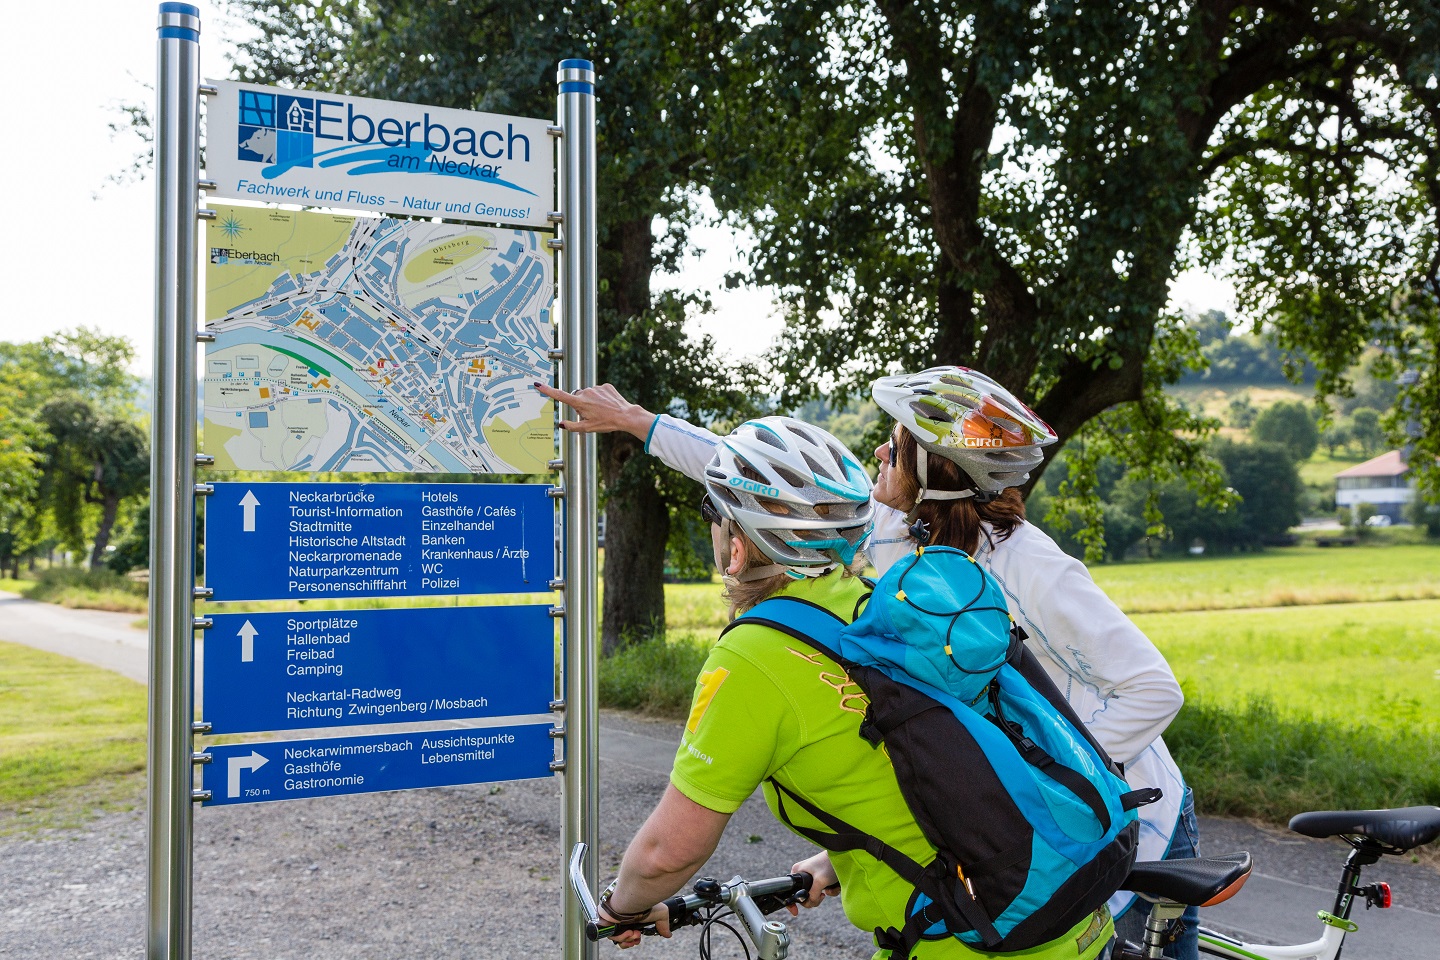 Schon 52700 Kilometer für Stauferstadt erradelt – STADTRADELN: Nachträge bis 3. Juni – Stadt Eberbach verlost Trikots und „Eber-Bike“ Nutzung